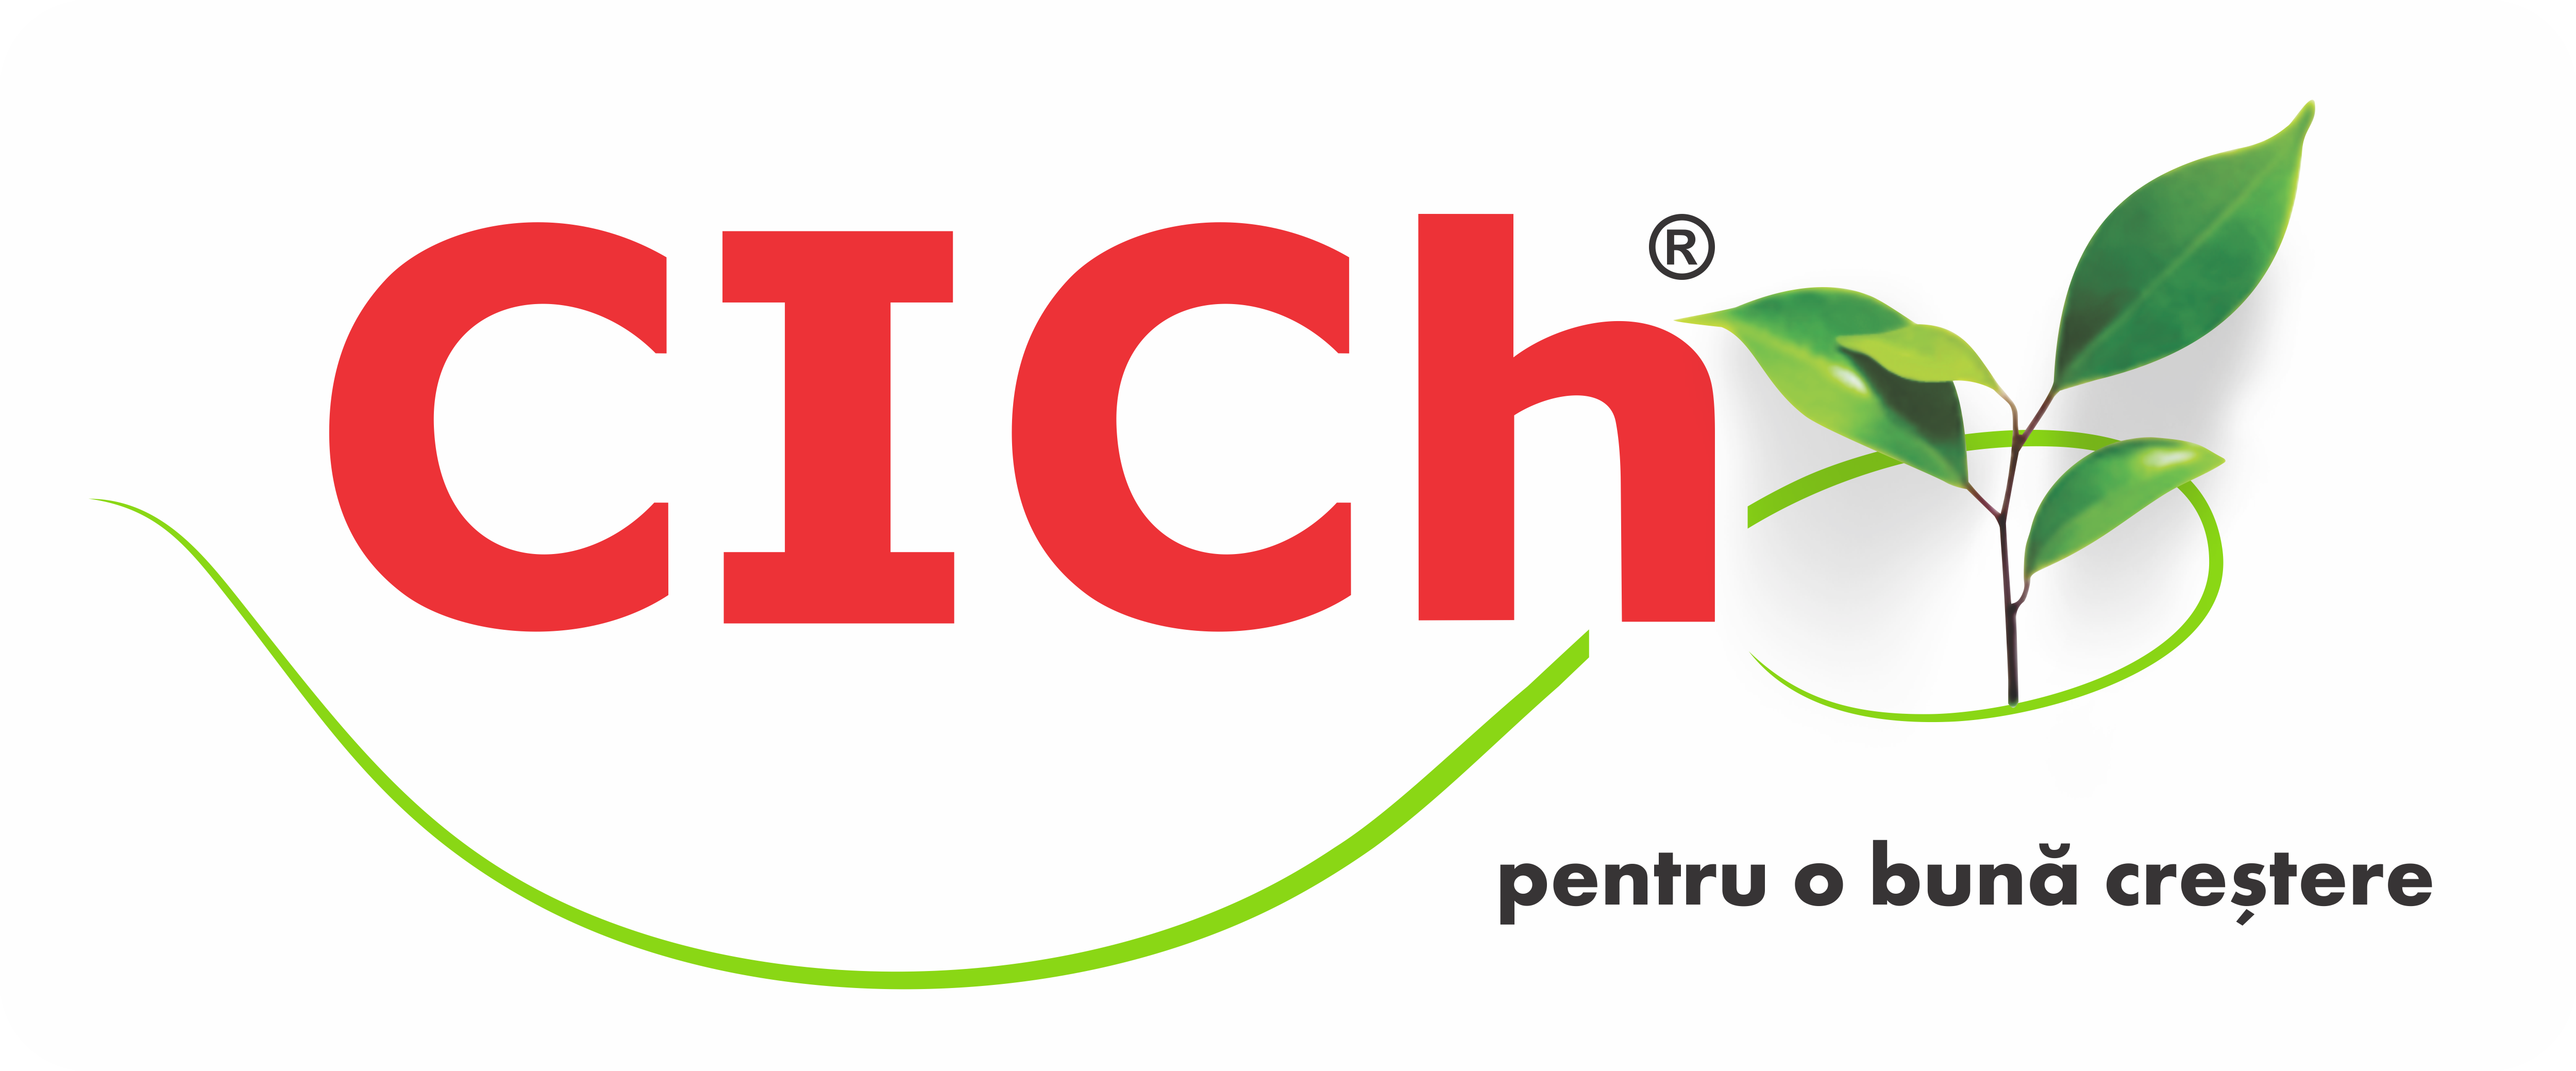 Logo CICH fR cu slogan